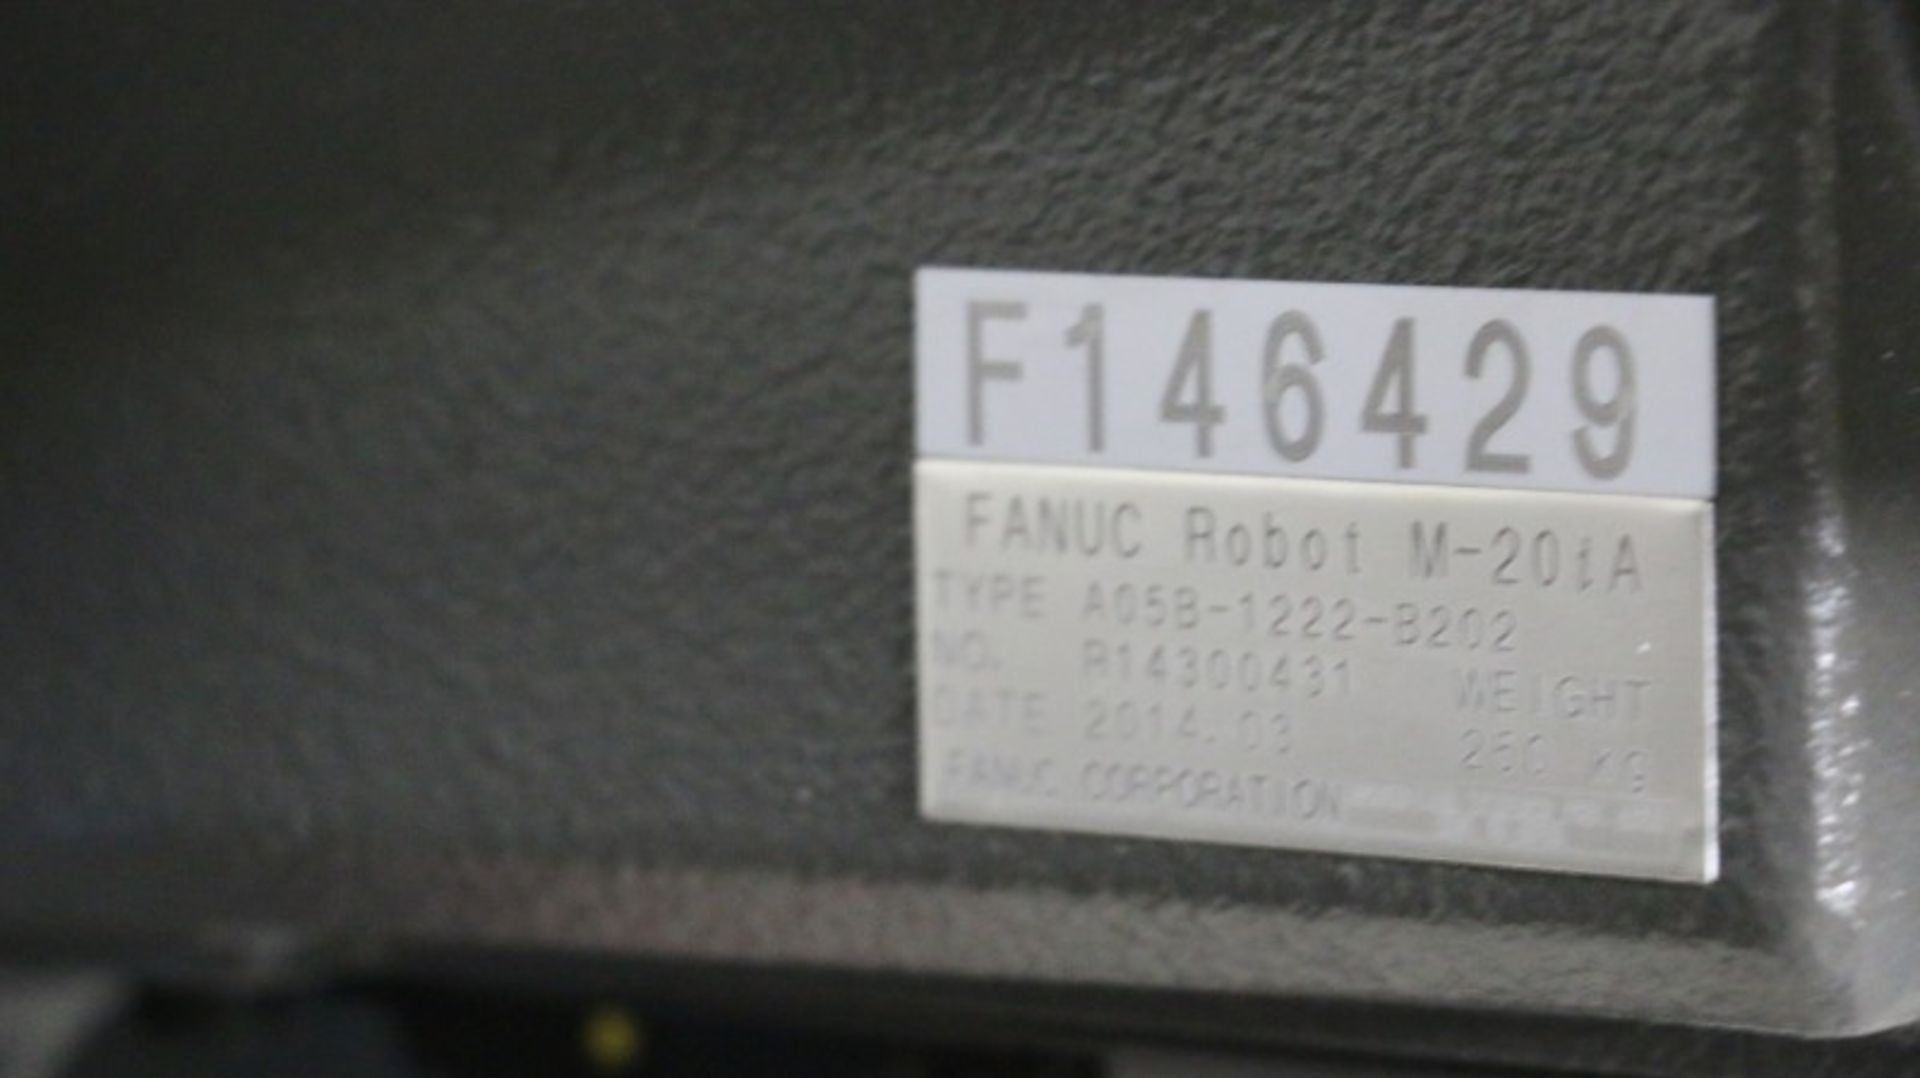 Fanuc Model M-20iA CNC Robot - Image 13 of 16